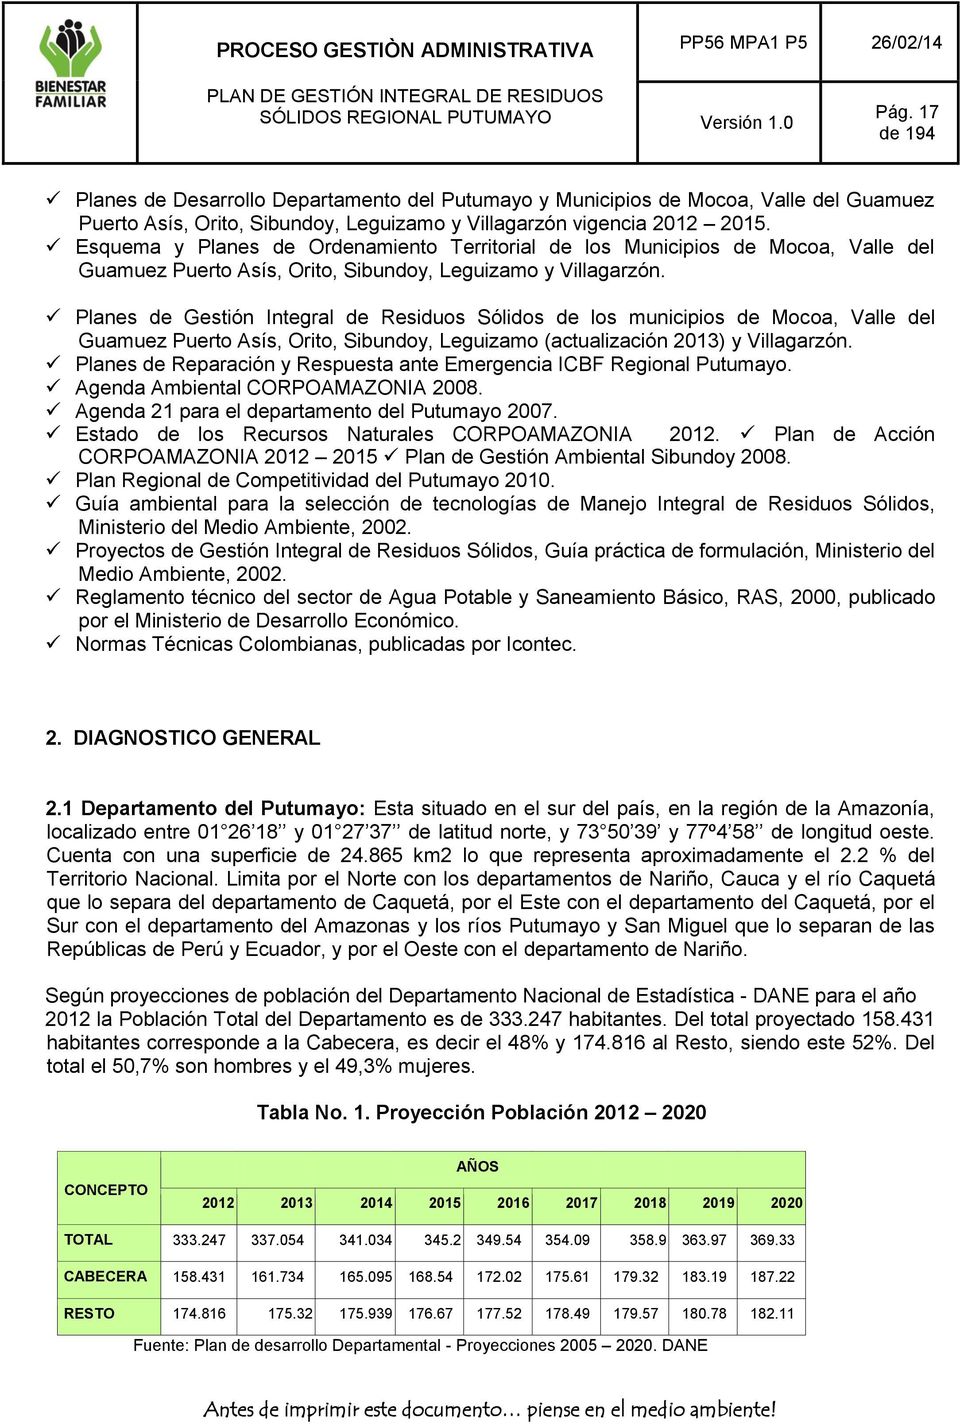 Planes de Gestión Integral de Residuos Sólidos de los municipios de Mocoa, Valle del Guamuez Puerto Asís, Orito, Sibundoy, Leguizamo (actualización 2013) y Villagarzón.